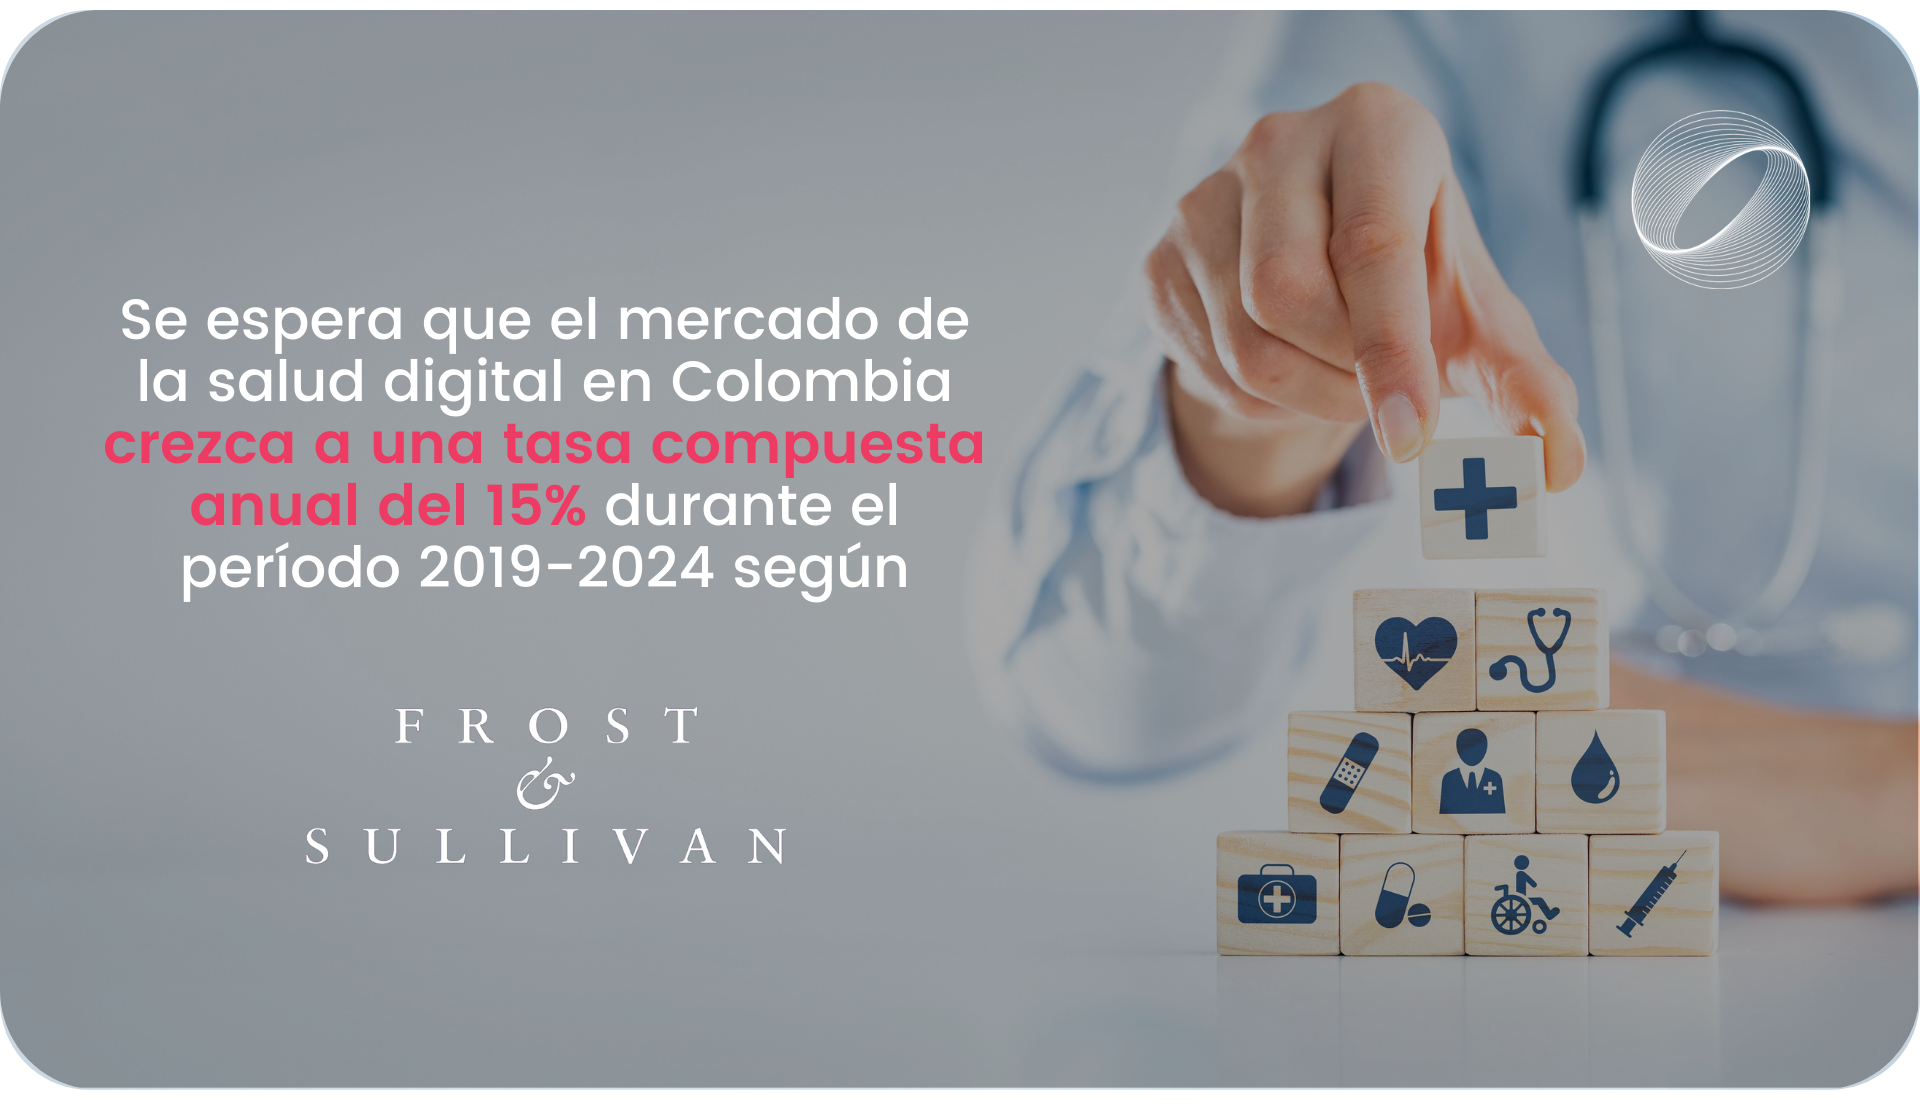 Se espera que el mercado de la salud digital en Colombia crezca a una tasa compuesta anual del 15% durante el período 2019-2024 según